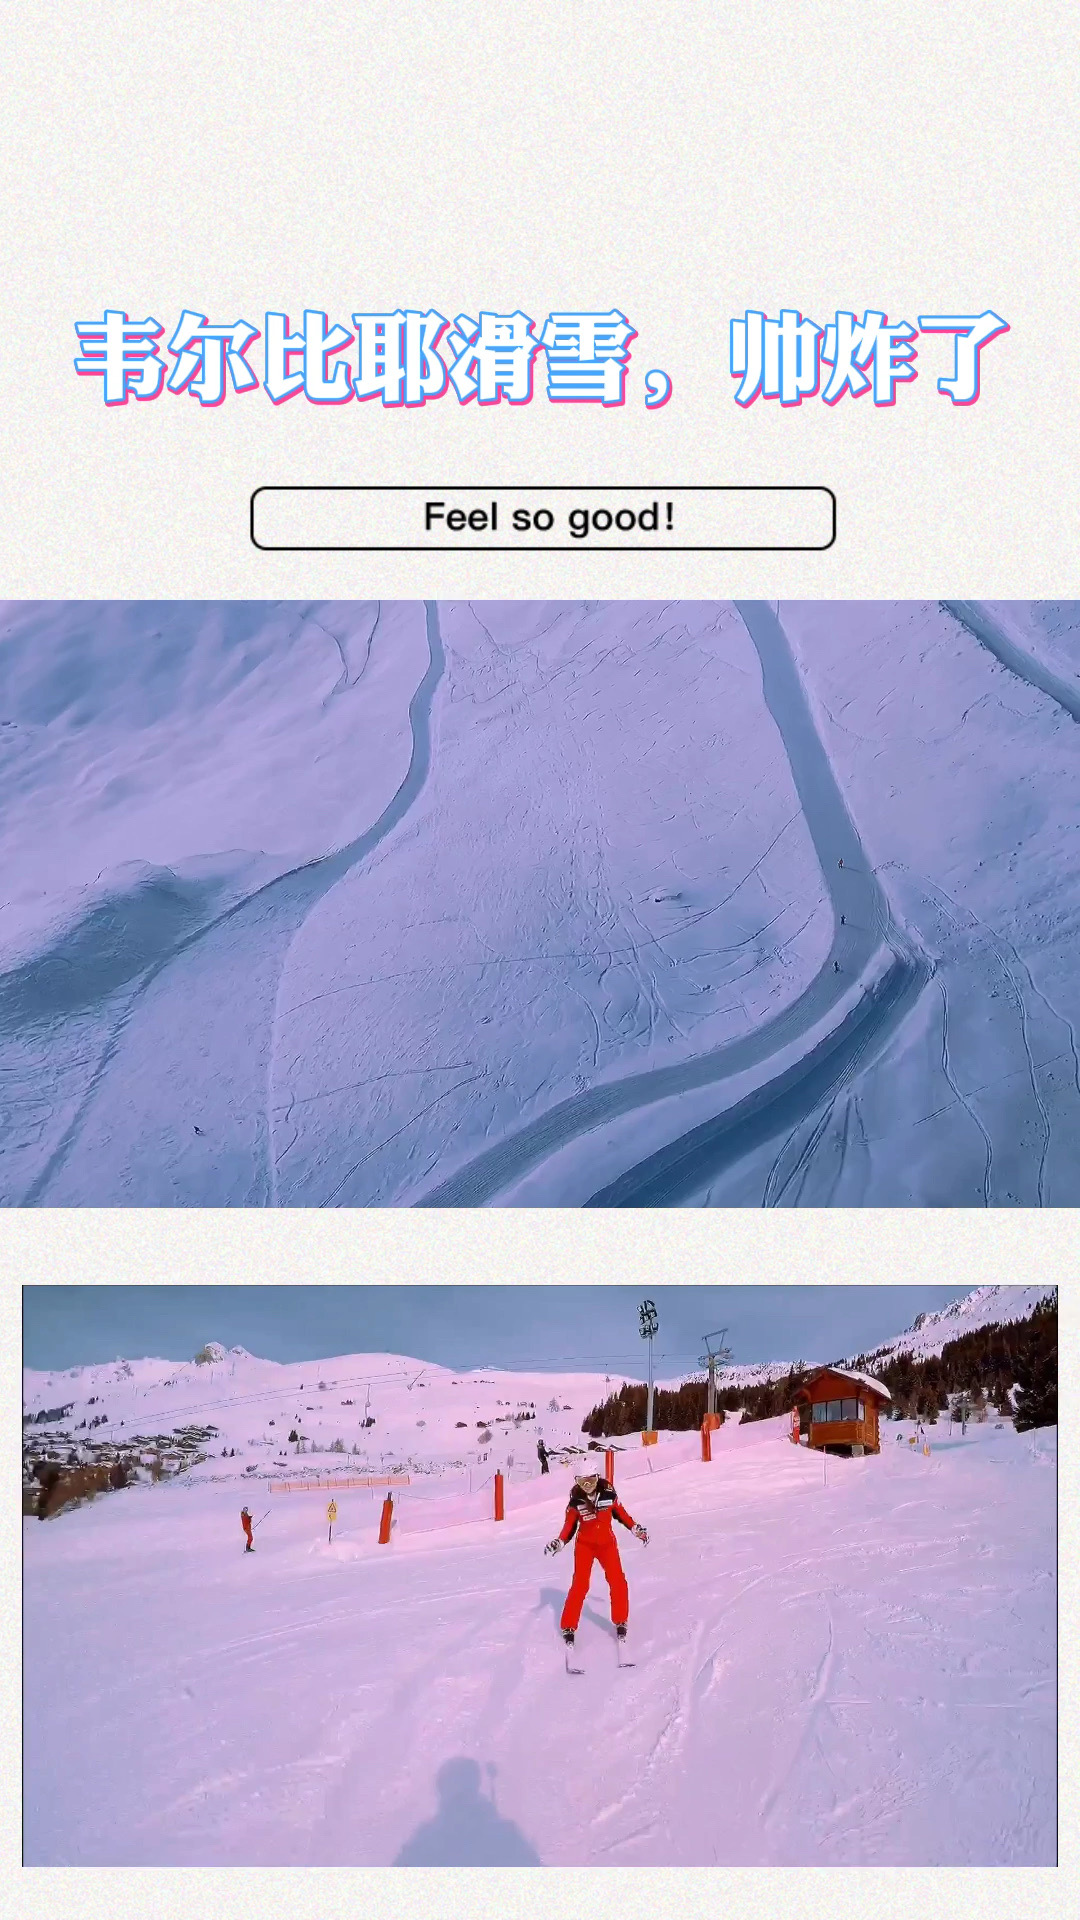 瑞士滑雪有多帅？这个视频告诉你